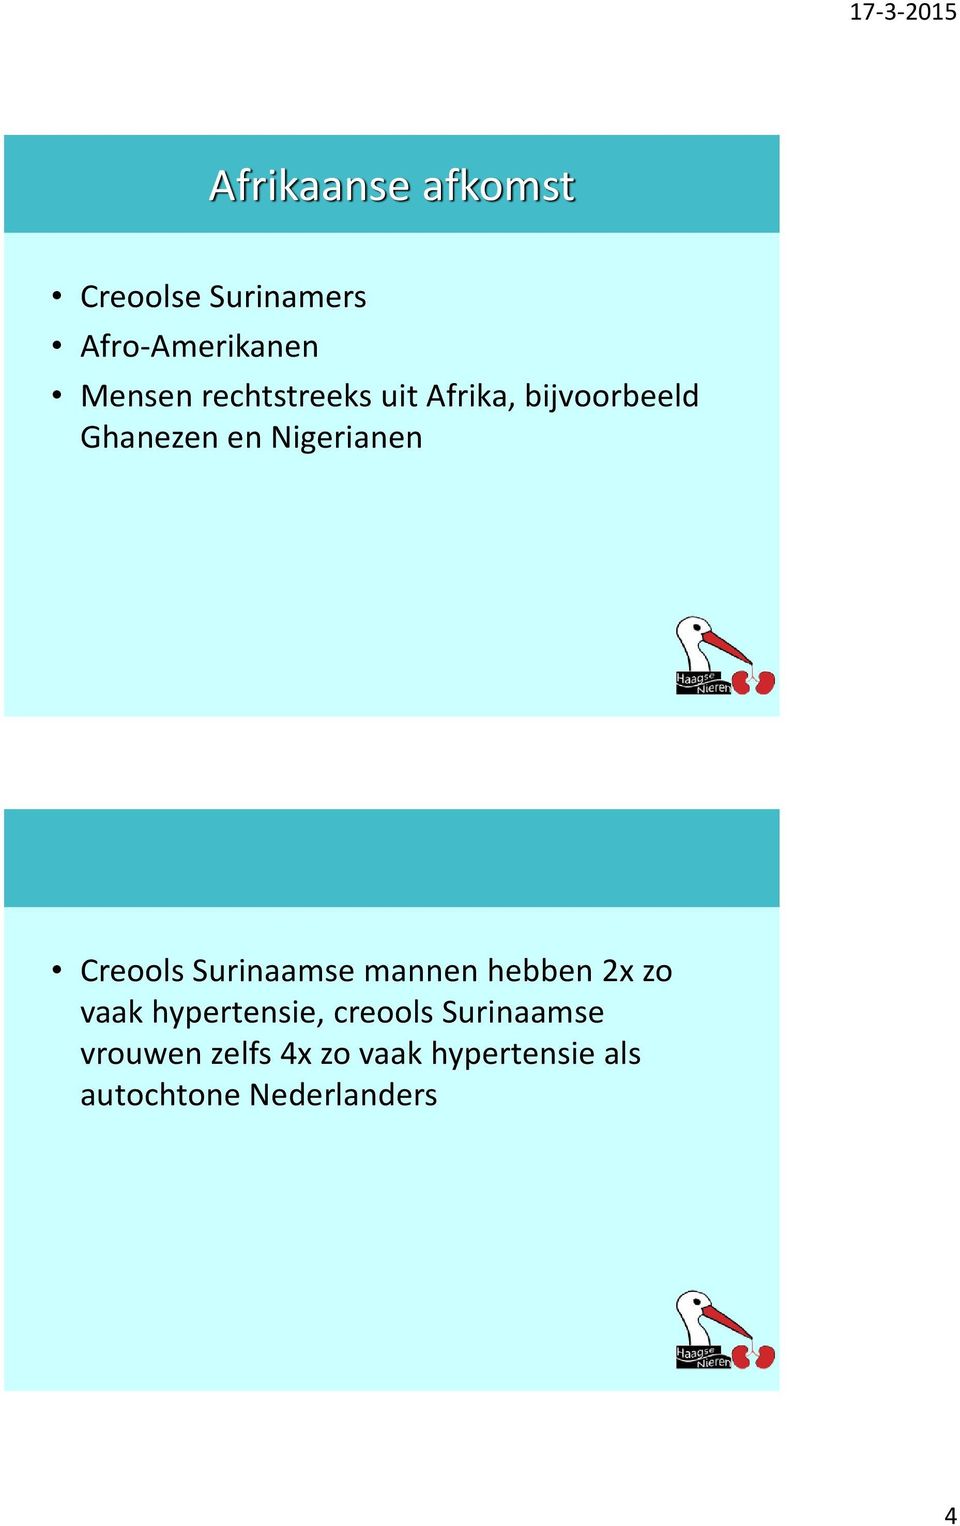 Creools Surinaamse mannen hebben 2x zo vaak hypertensie, creools